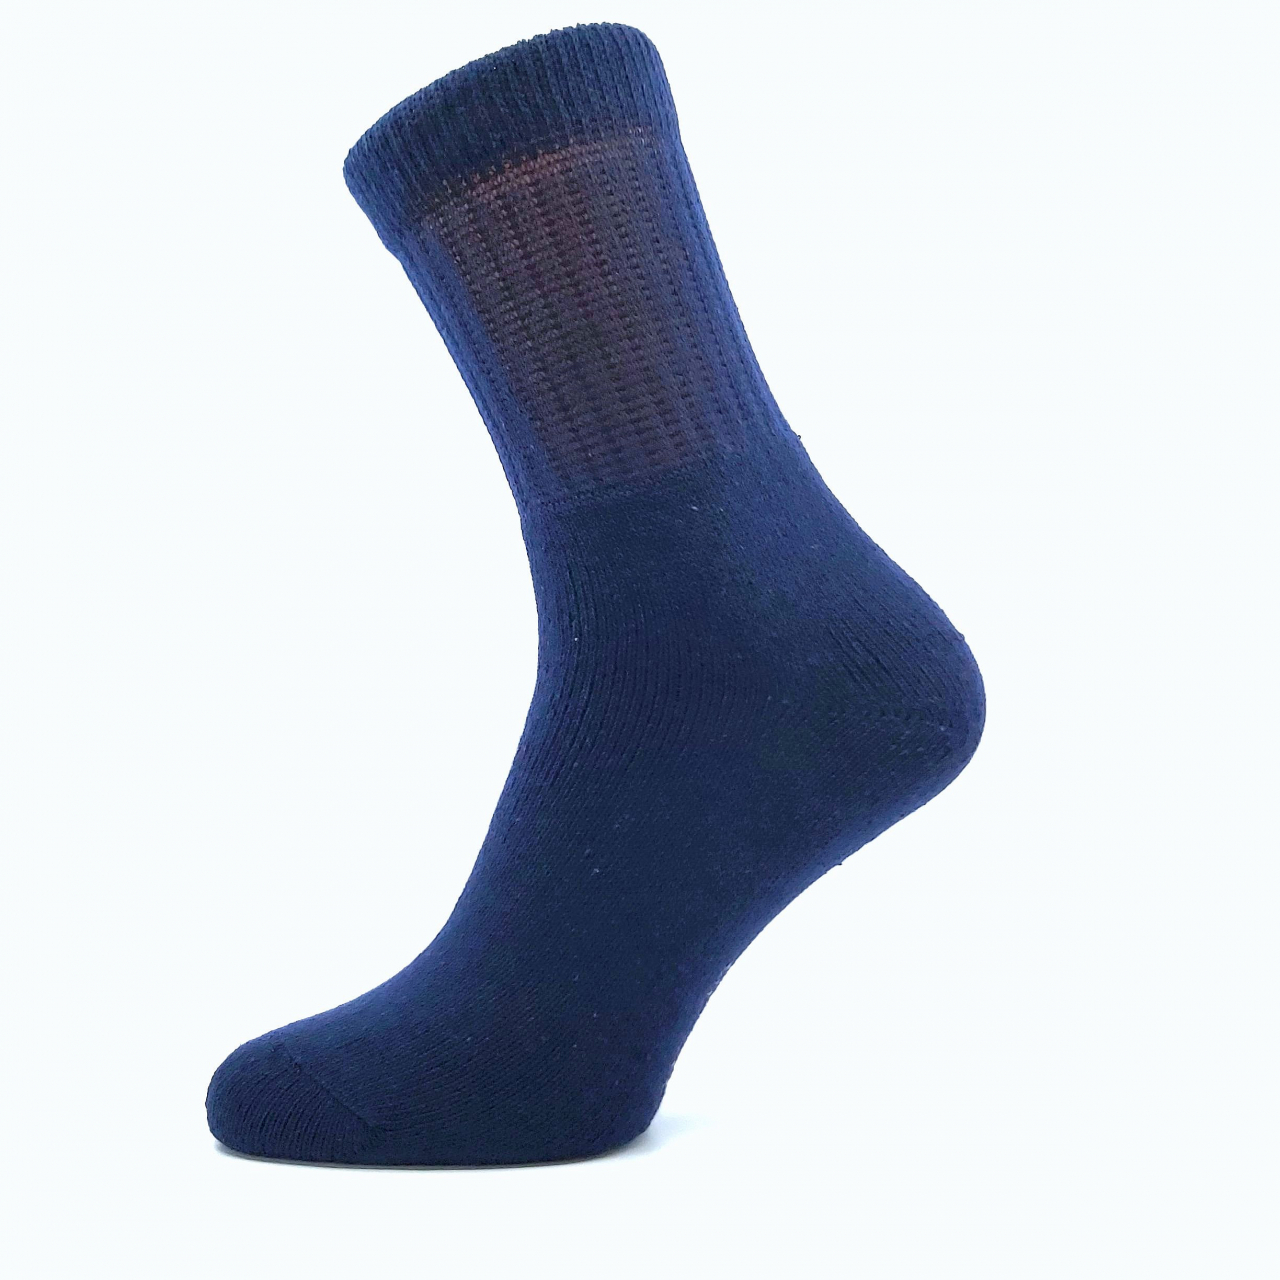 Ponožky trekingové unisex Boma 012-41-39 I - tmavě modré, 35-38